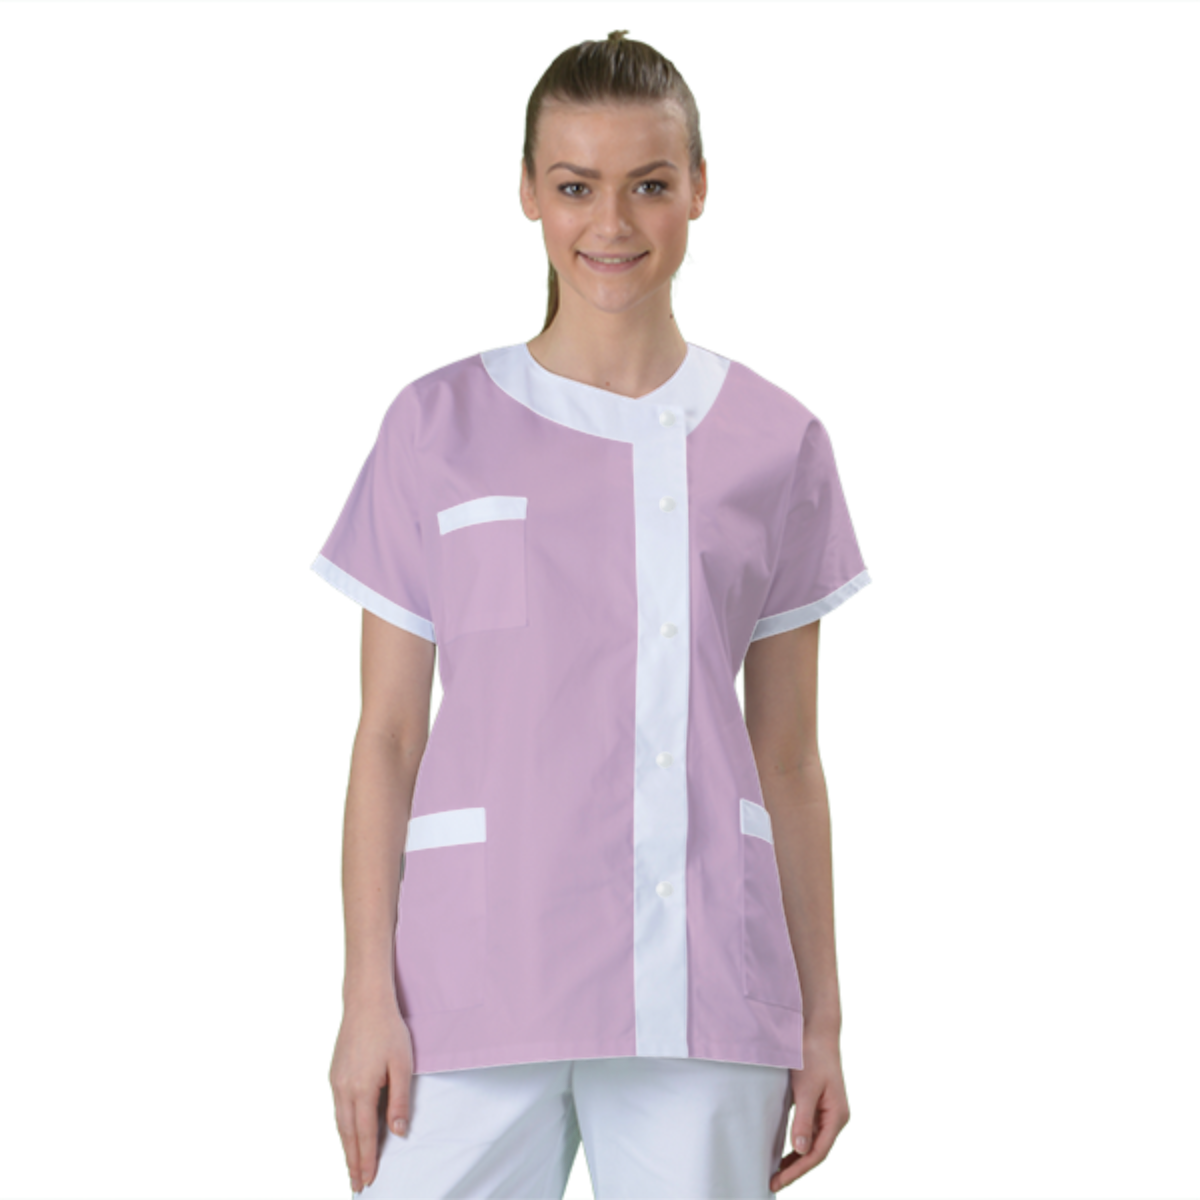 blouse-medicale-col-carre-a-personnaliser acheté - par Celine - le 11-05-2018